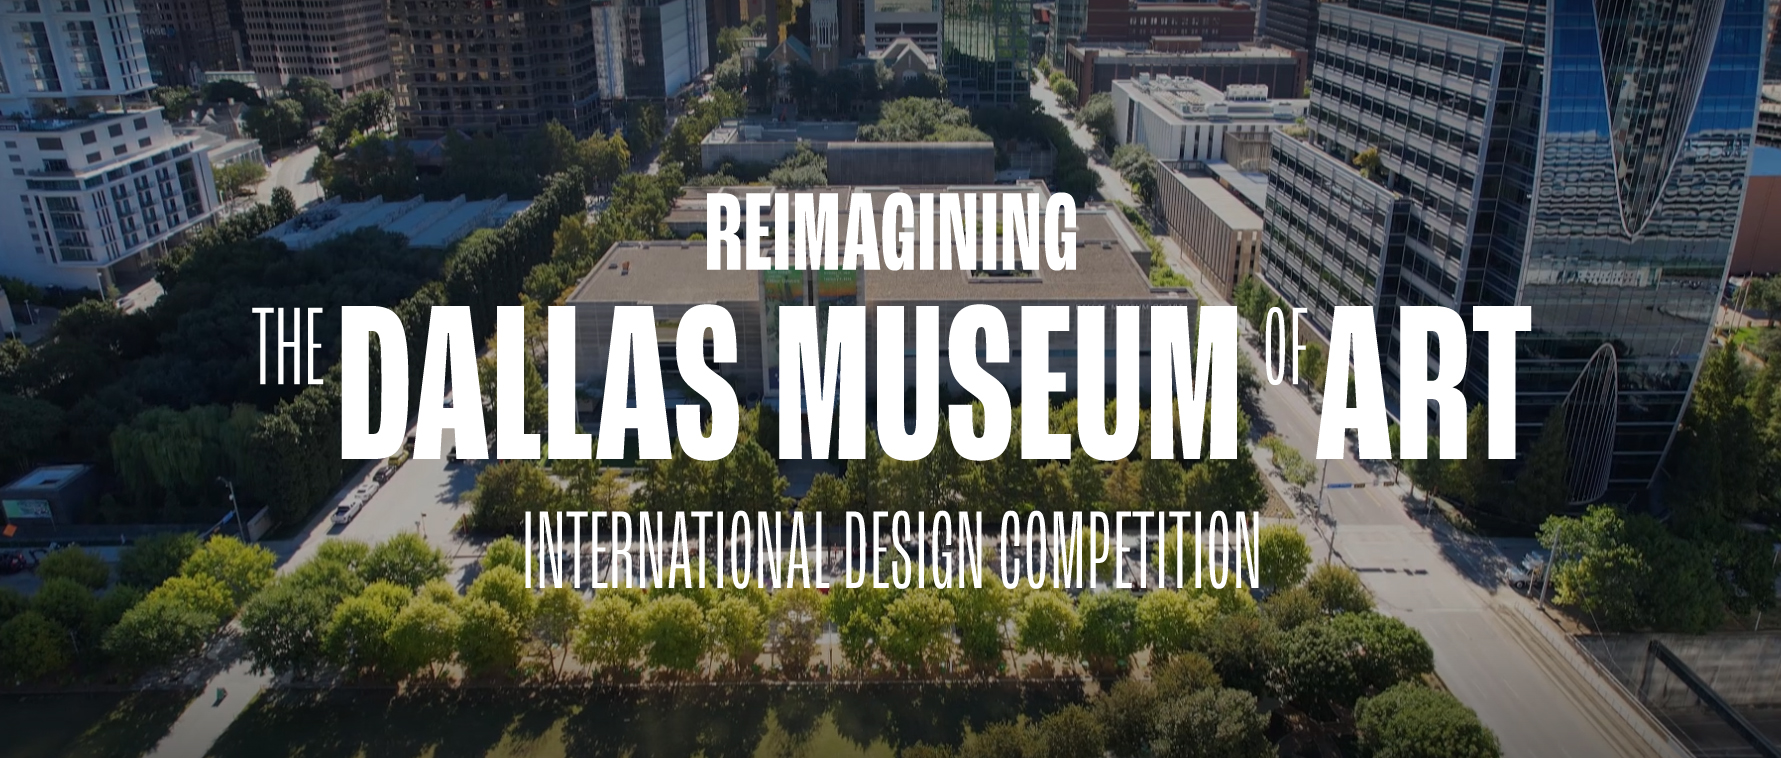 重新构想达拉斯艺术博物馆国际设计竞赛